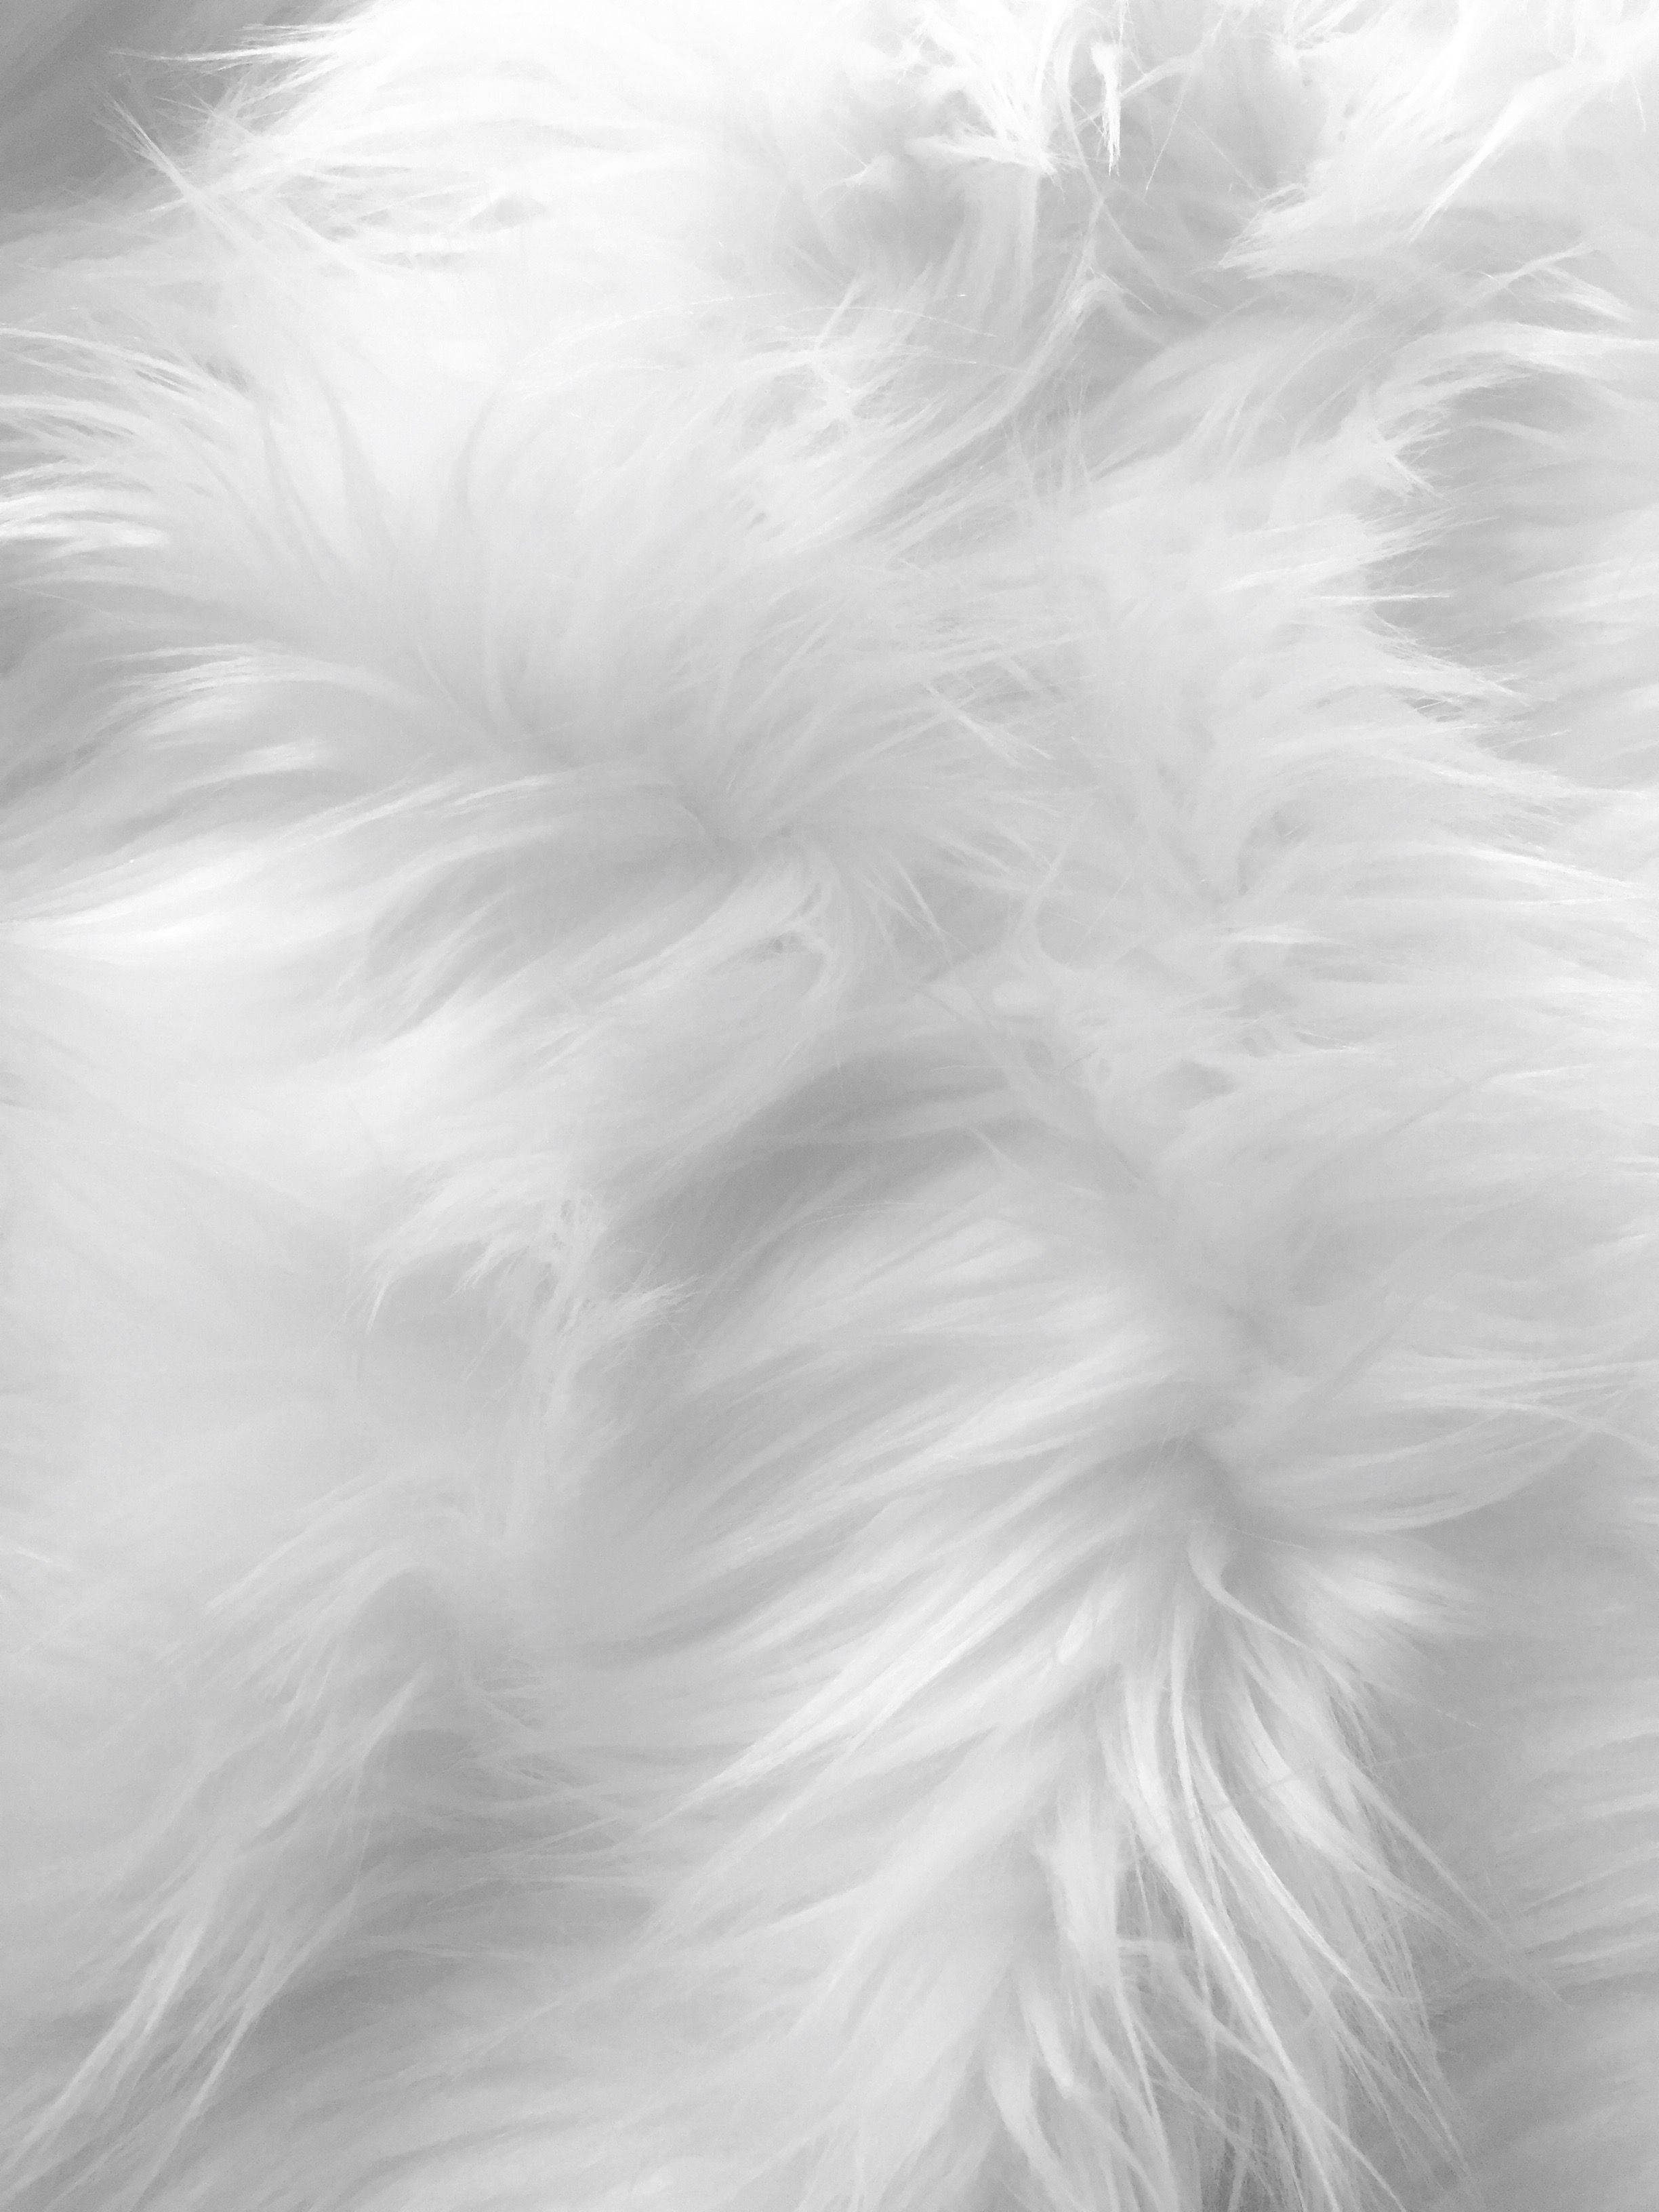 Download Soft White Animal Fur Wallpaper